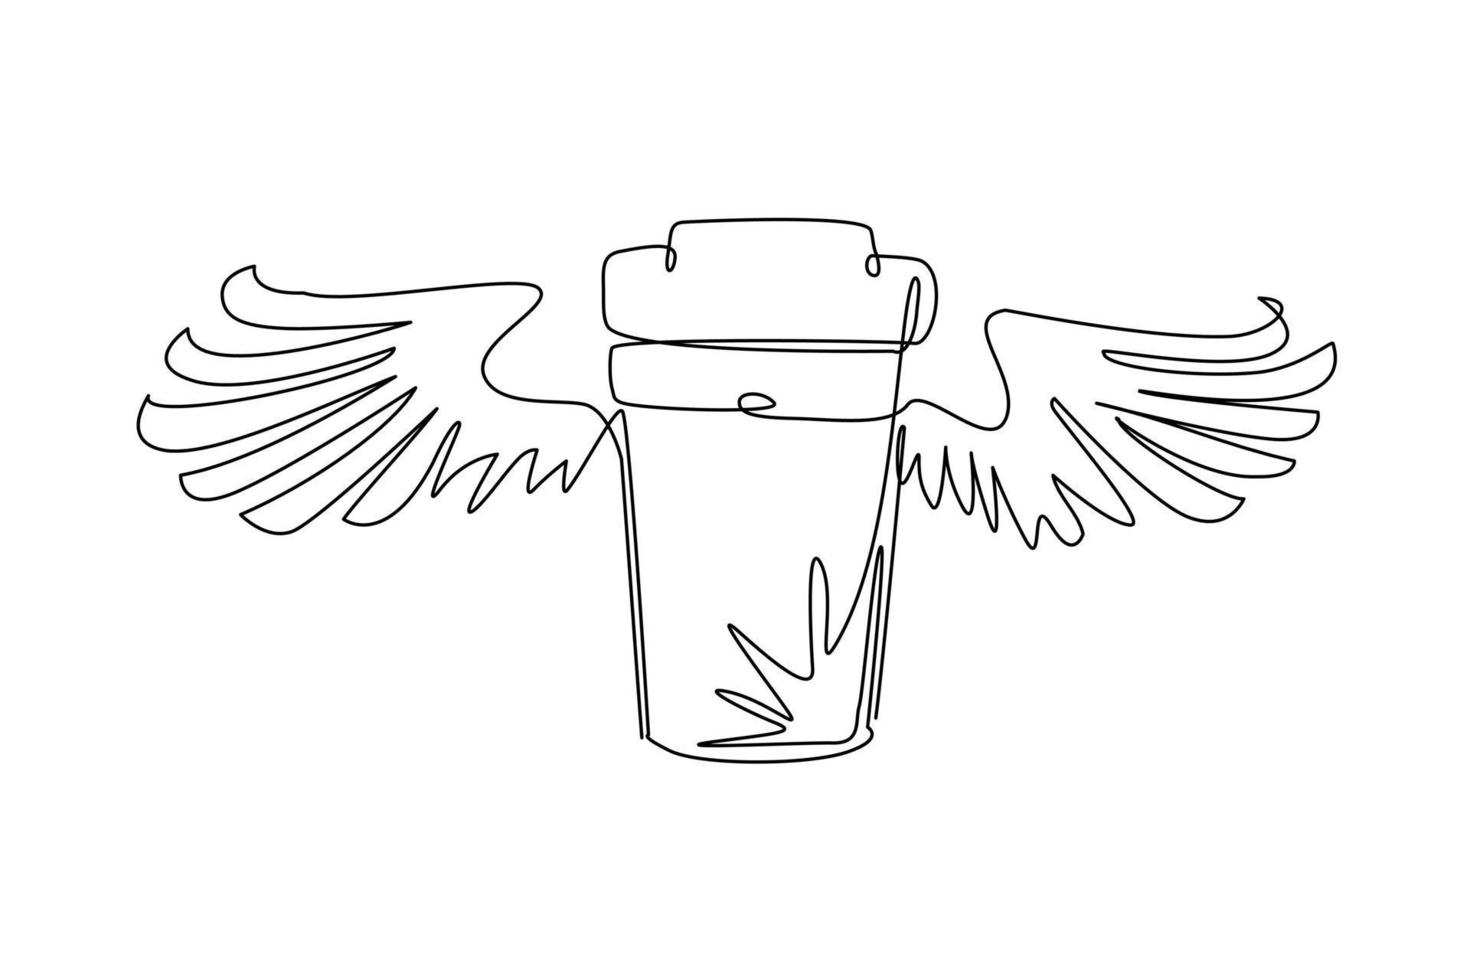 enkele doorlopende lijntekening take-out vliegende koffiekopje met vleugels. wegwerp kartonnen kopje koffie. papier container icoon. fastfood, lunchbezorgprogramma. een lijn tekenen grafisch ontwerp vector